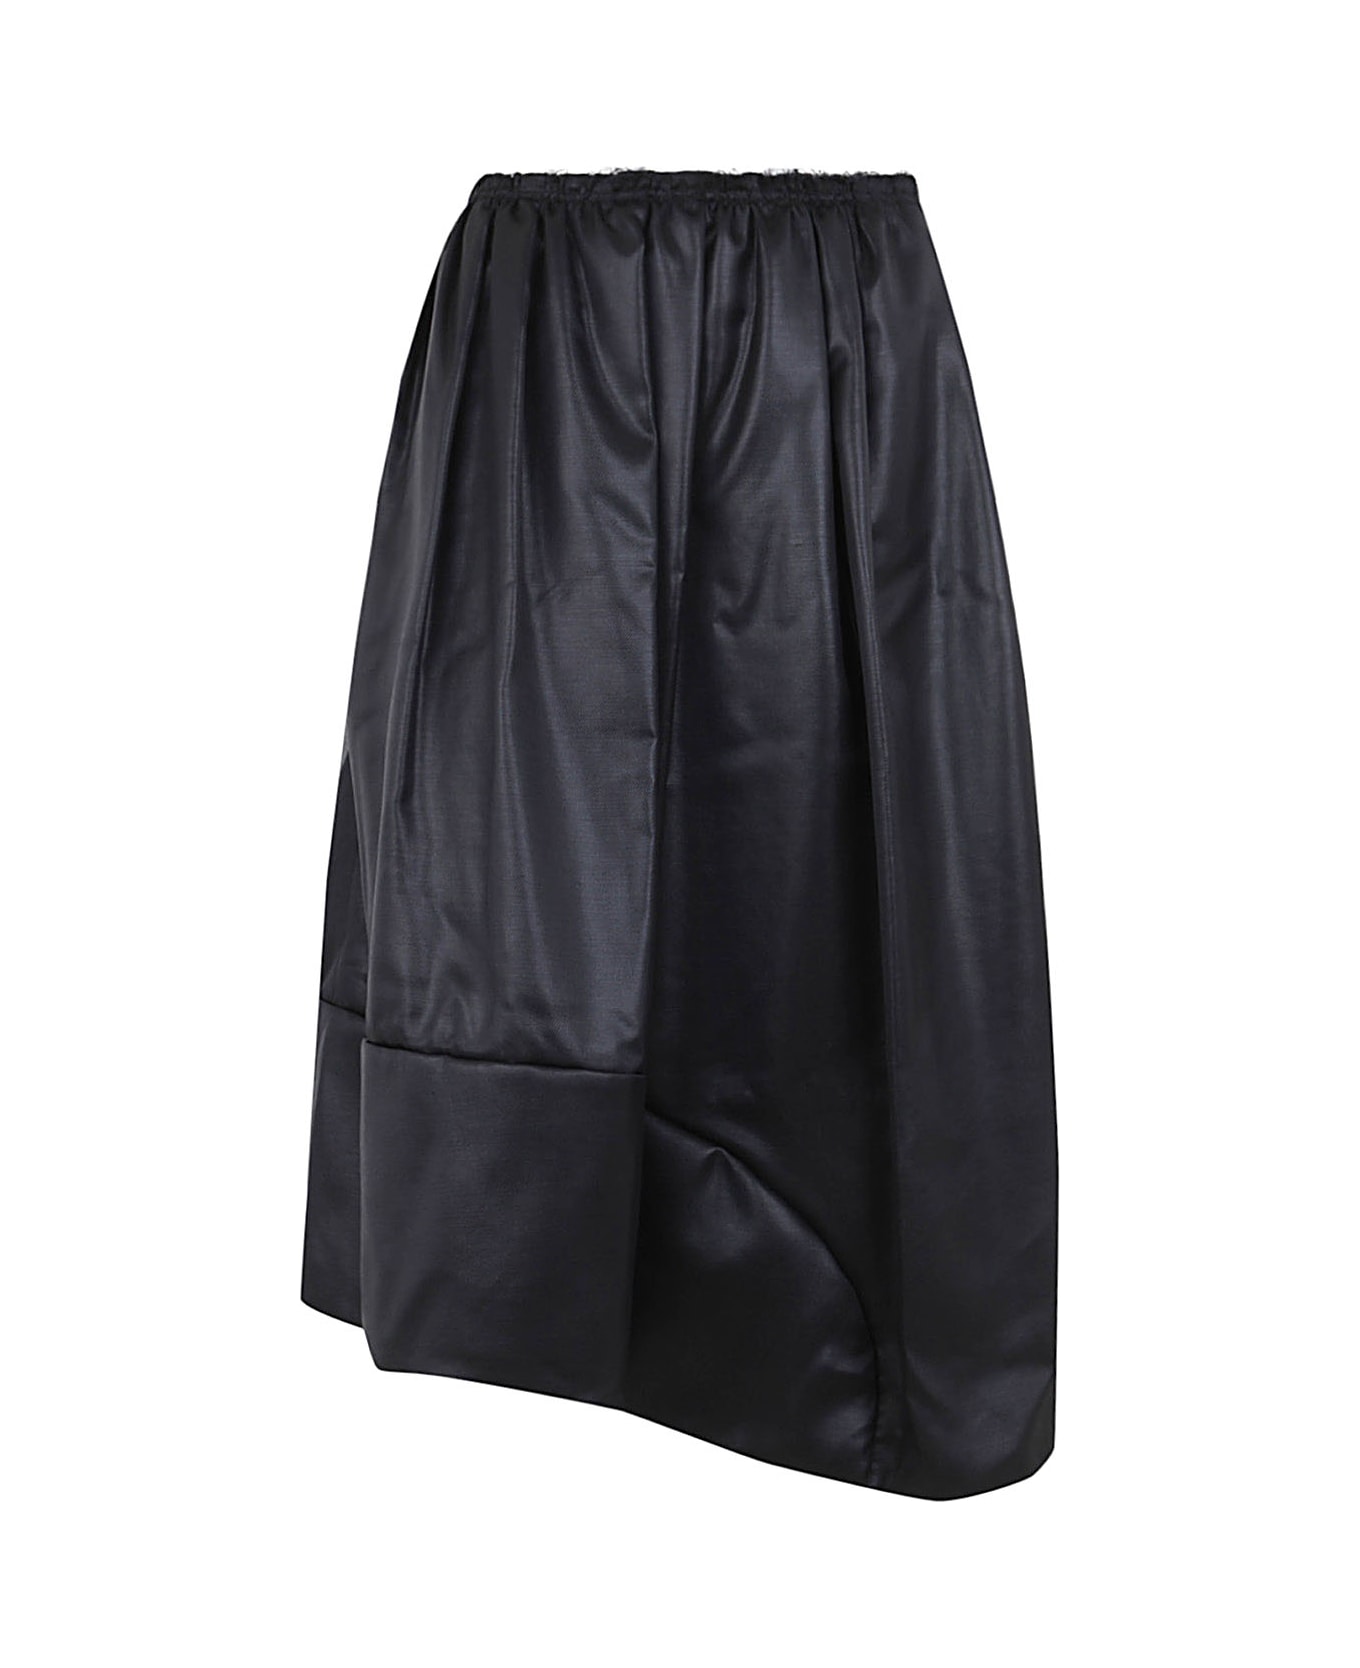 Comme des Garçons Comme des Garçons Ladies Skirt - Black スカート